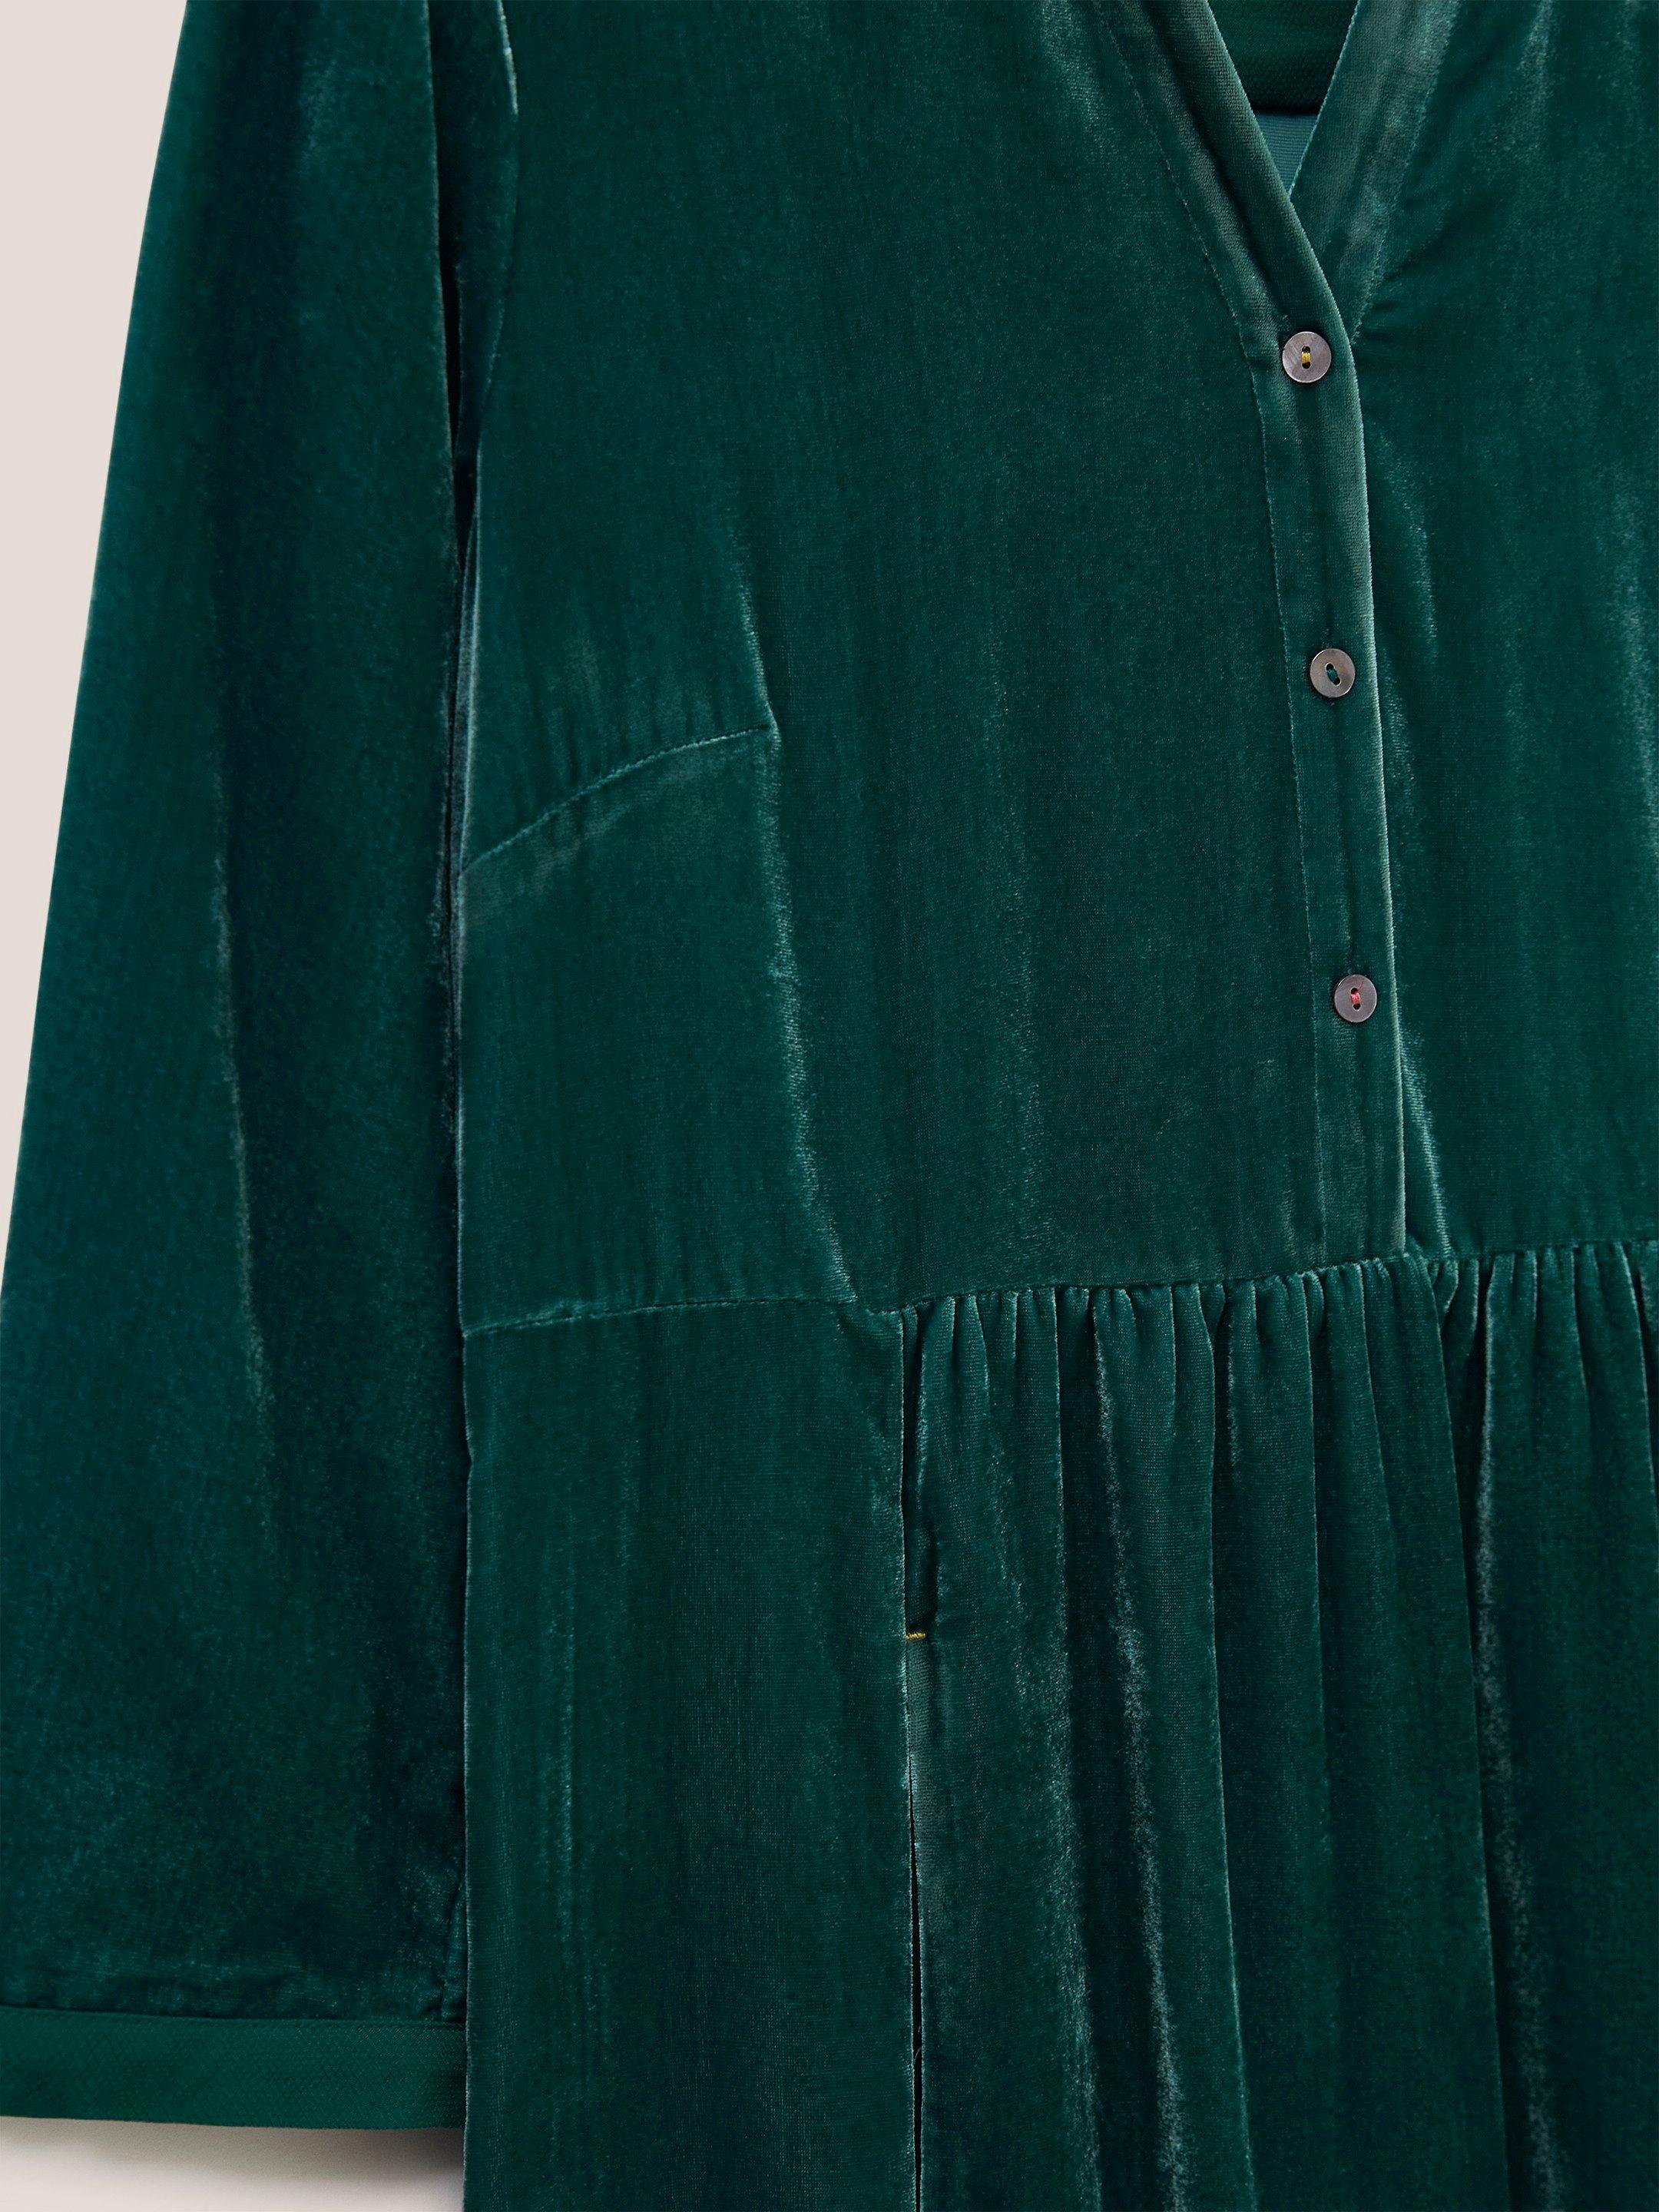 Naya Velvet Midi Dress in MID TEAL - FLAT DETAIL